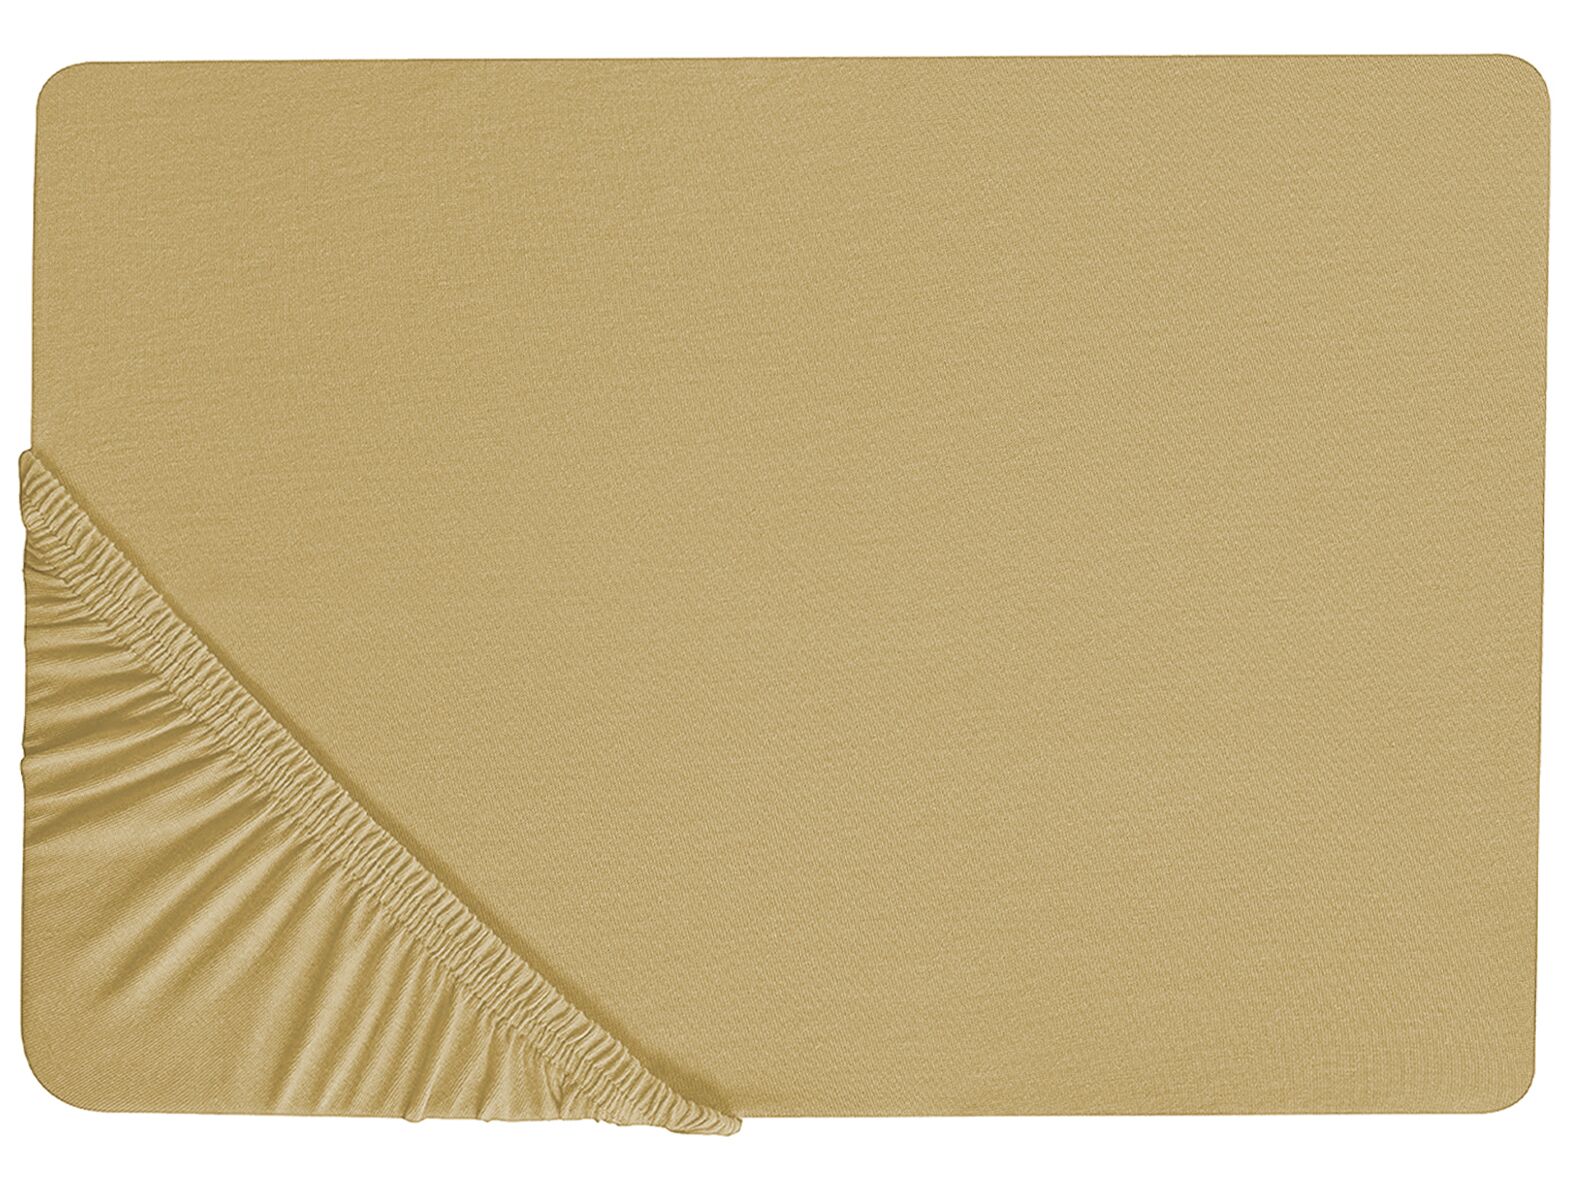 Olivazöld pamut gumis lepedő 140 x 200 cm JANBU_845889